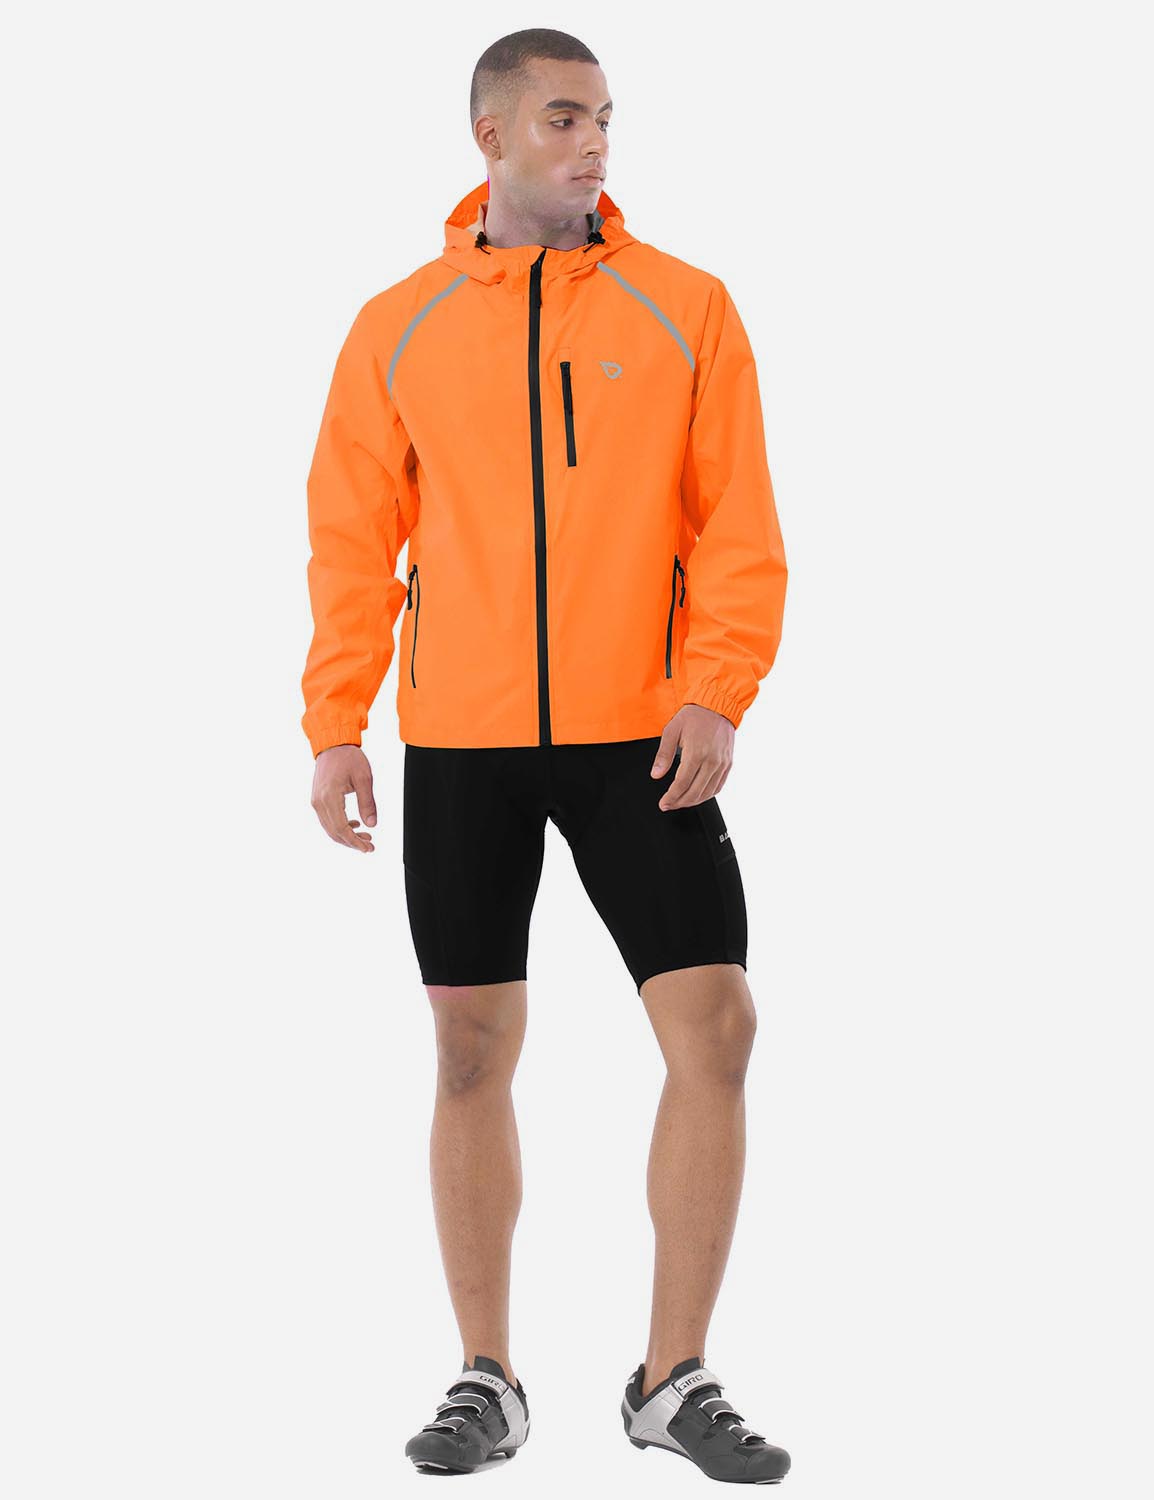 Baleaf Men's Fluorescent Waterproof Packable Windbreaker Track Jacket aaa467 Vibrant Orange Full